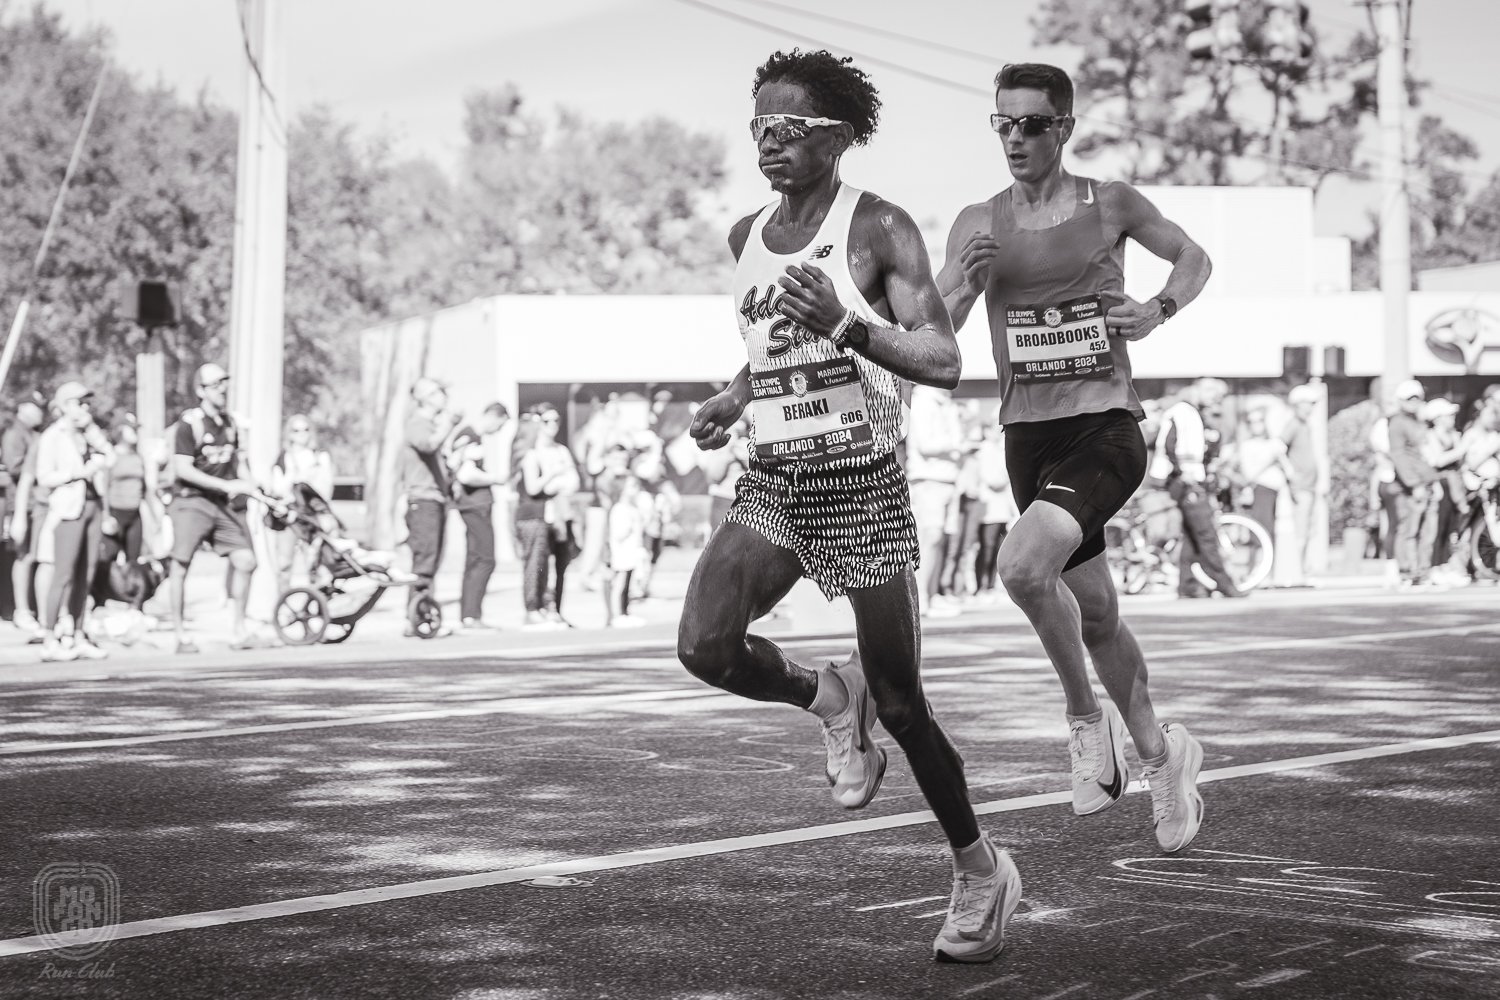  37. Awet Beraki (02:19:32) y Jerod Broadbooks (02:16:20), participando en sus primeras clasificatorias para maratón olímpico. 